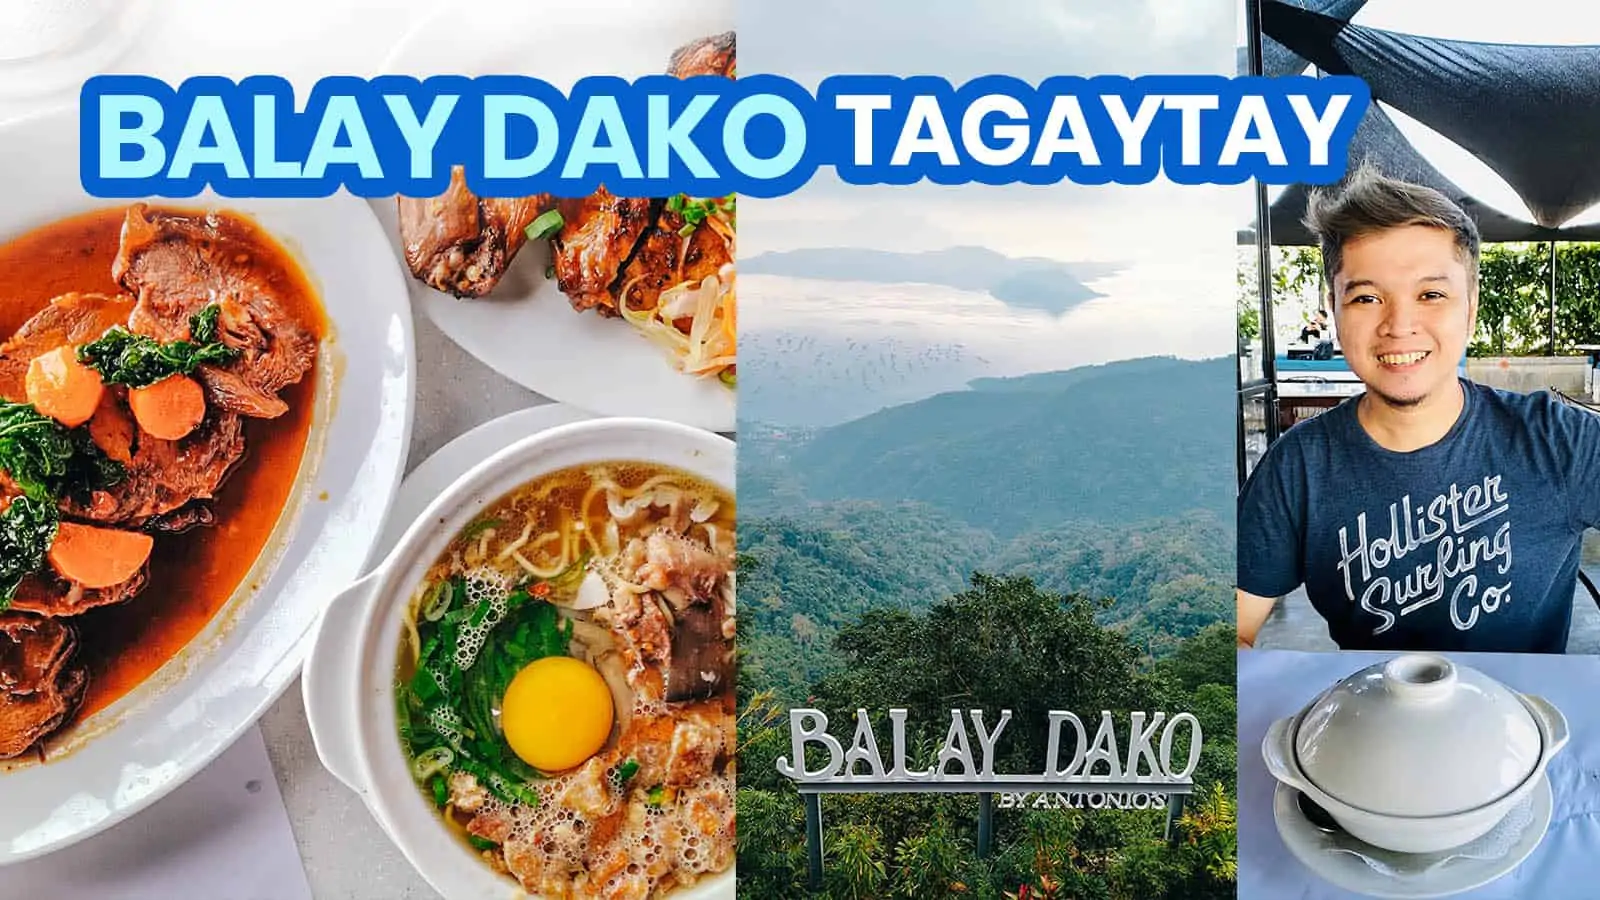 BALAY DAKO大aytay新常态旅游指南+菜单